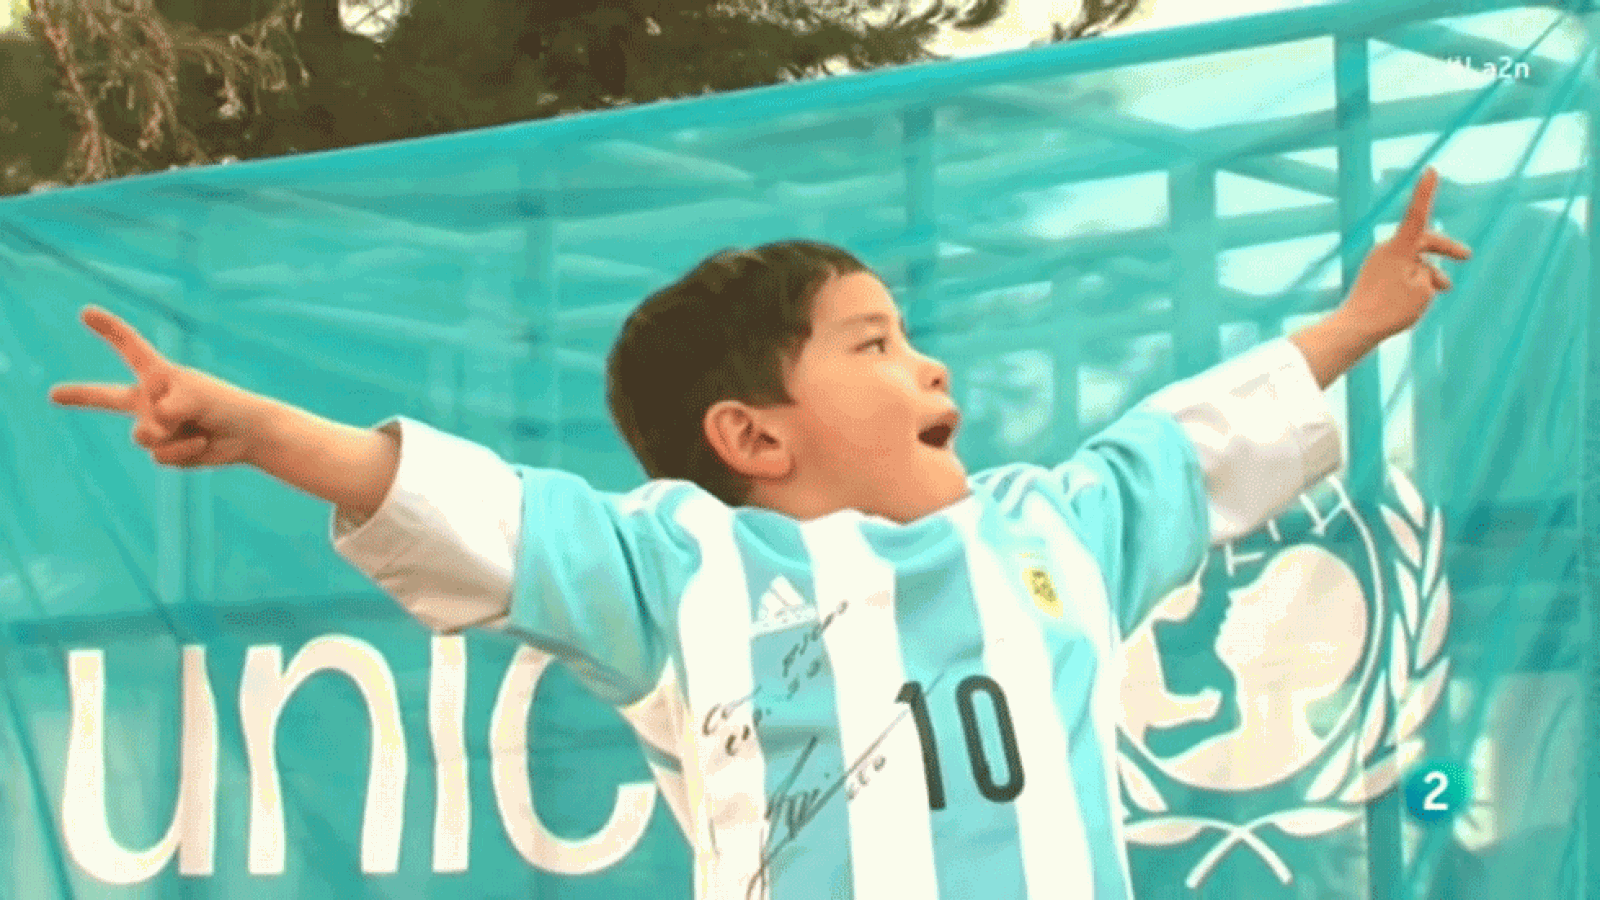 La 2 Noticias - El niño de la camiseta de Messi se convierte en refugiado amenazado por los talibanes